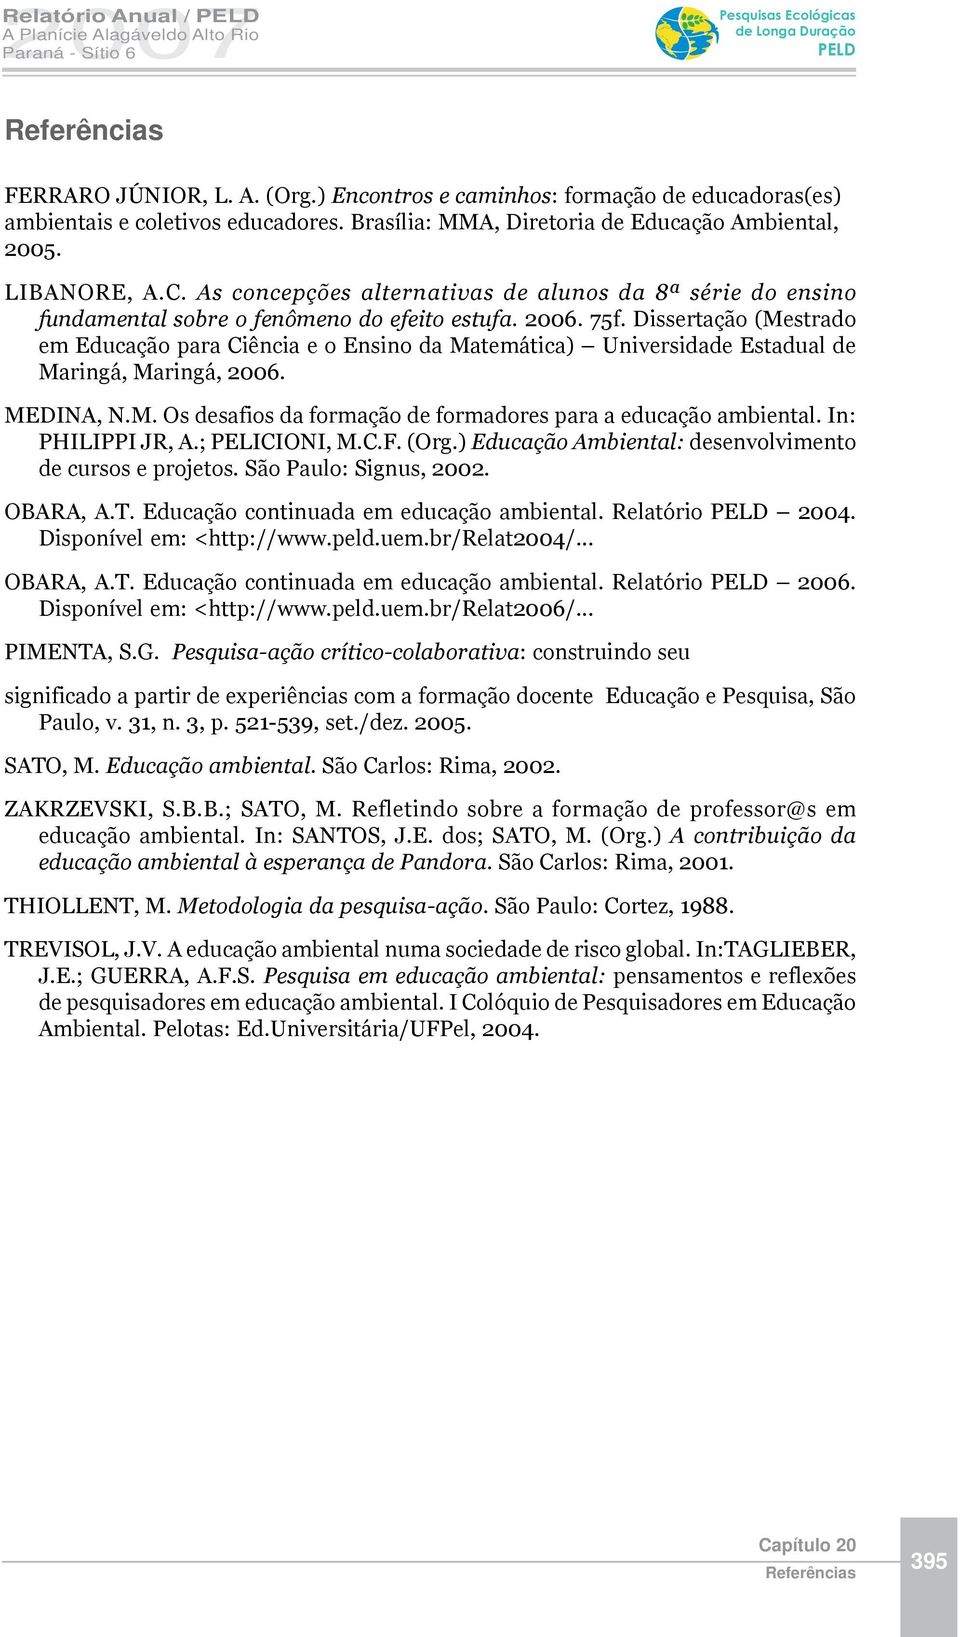 Dissertação (Mestrado em Educação para Ciência e o Ensino da Matemática) Universidade Estadual de Maringá, Maringá, 2006. MEDINA, N.M. Os desafios da formação de formadores para a educação ambiental.